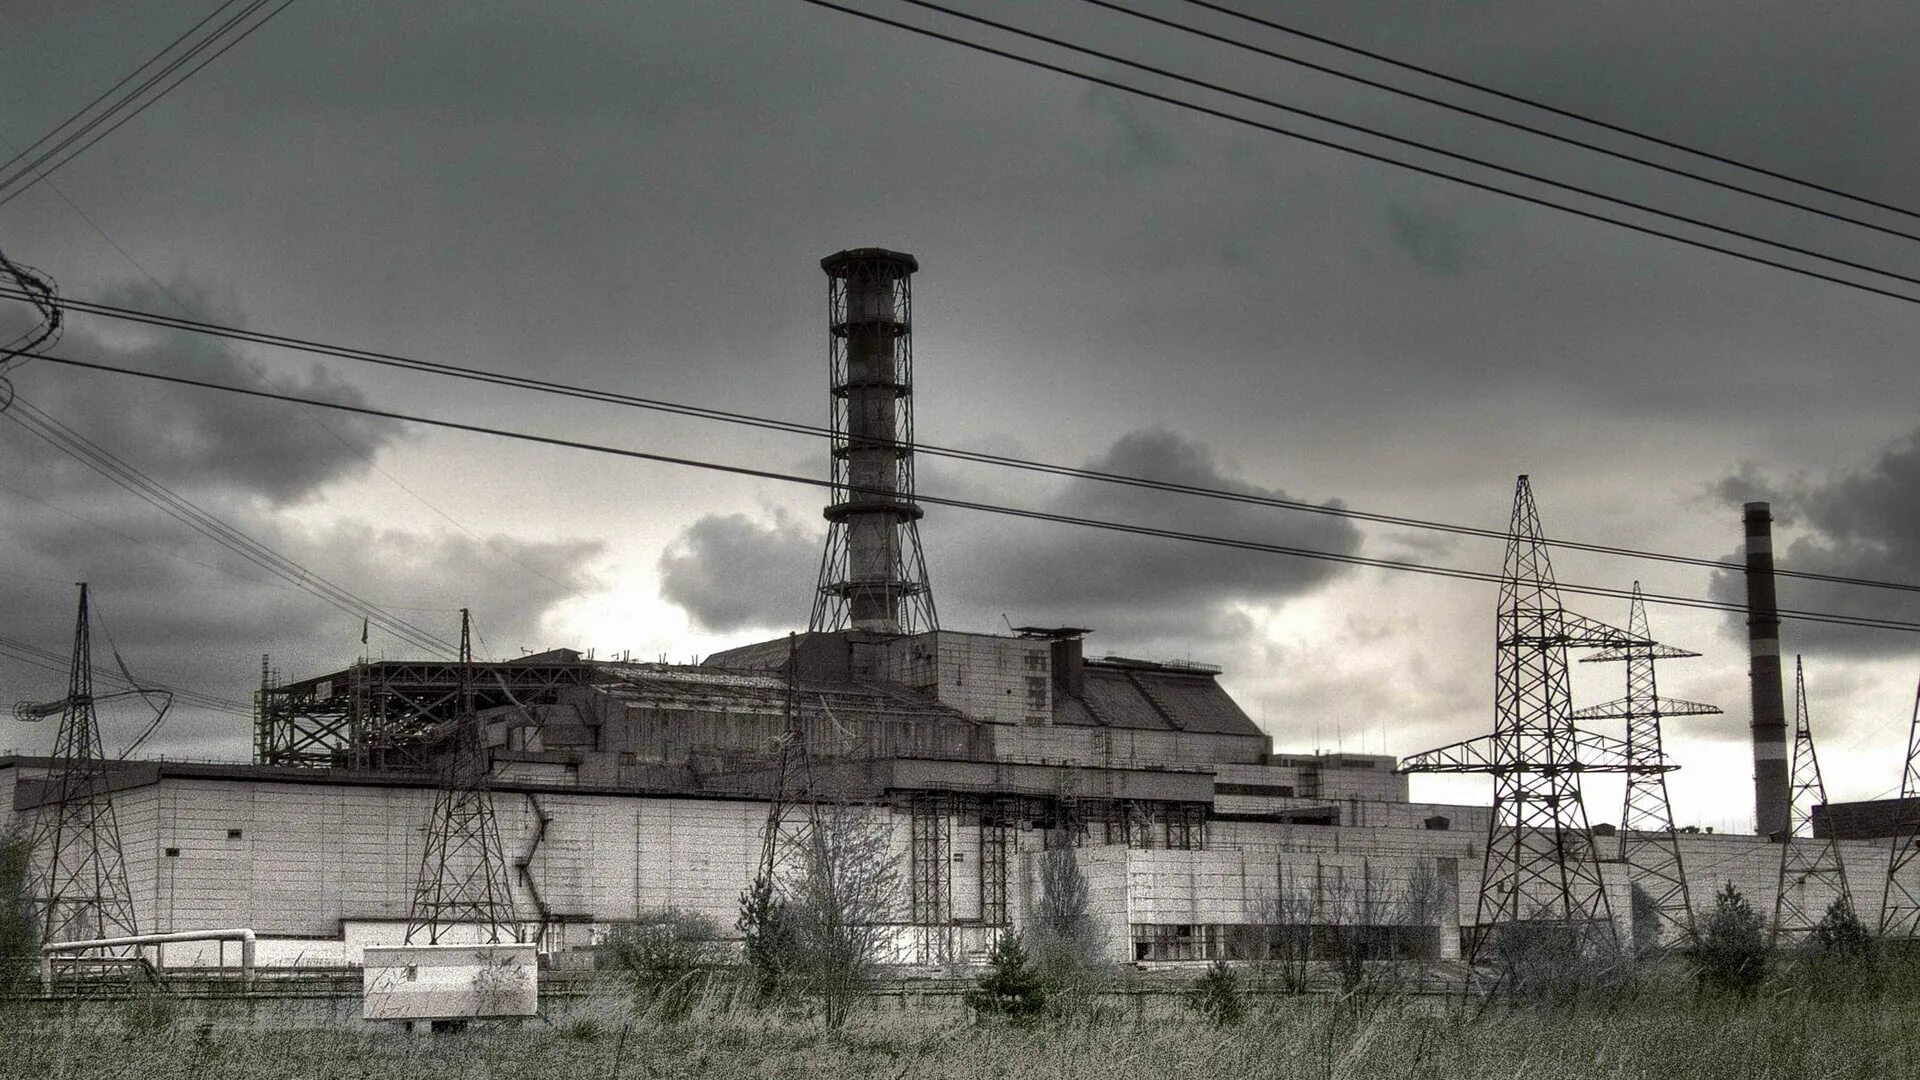 Chernobyl nuclear. Чернобыль Припять АЭС. Сталкер 4 энергоблок. Припять атомная станция. Припять станция АЭС.